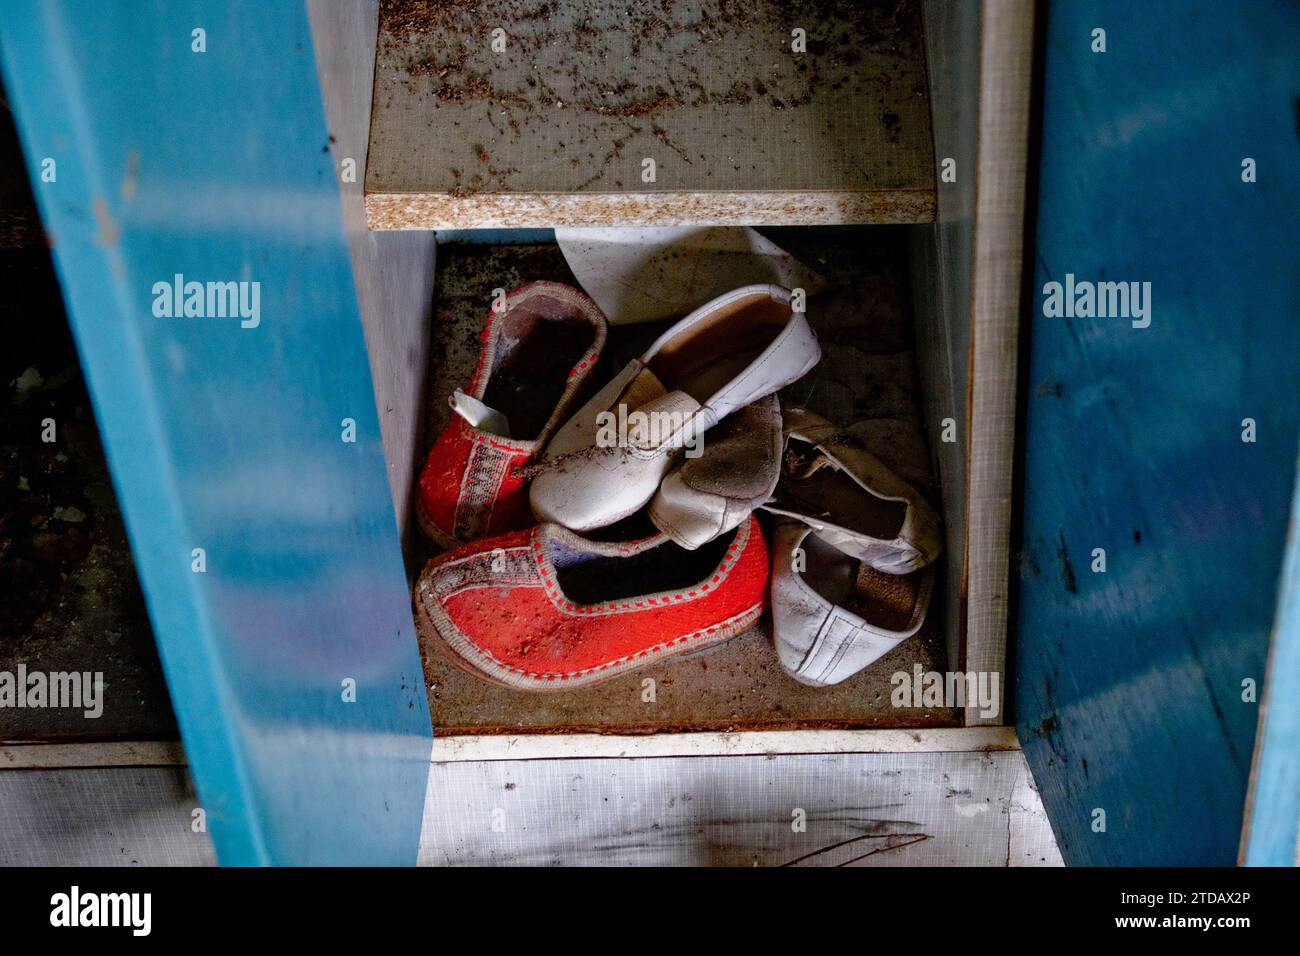 Un paio di scarpe vecchie e usurate all'interno di un armadietto metallico aperto e arrugginito. Le scarpe sono rosse e bianche e l'armadietto è blu. Pantofole per bambini piccoli Foto Stock